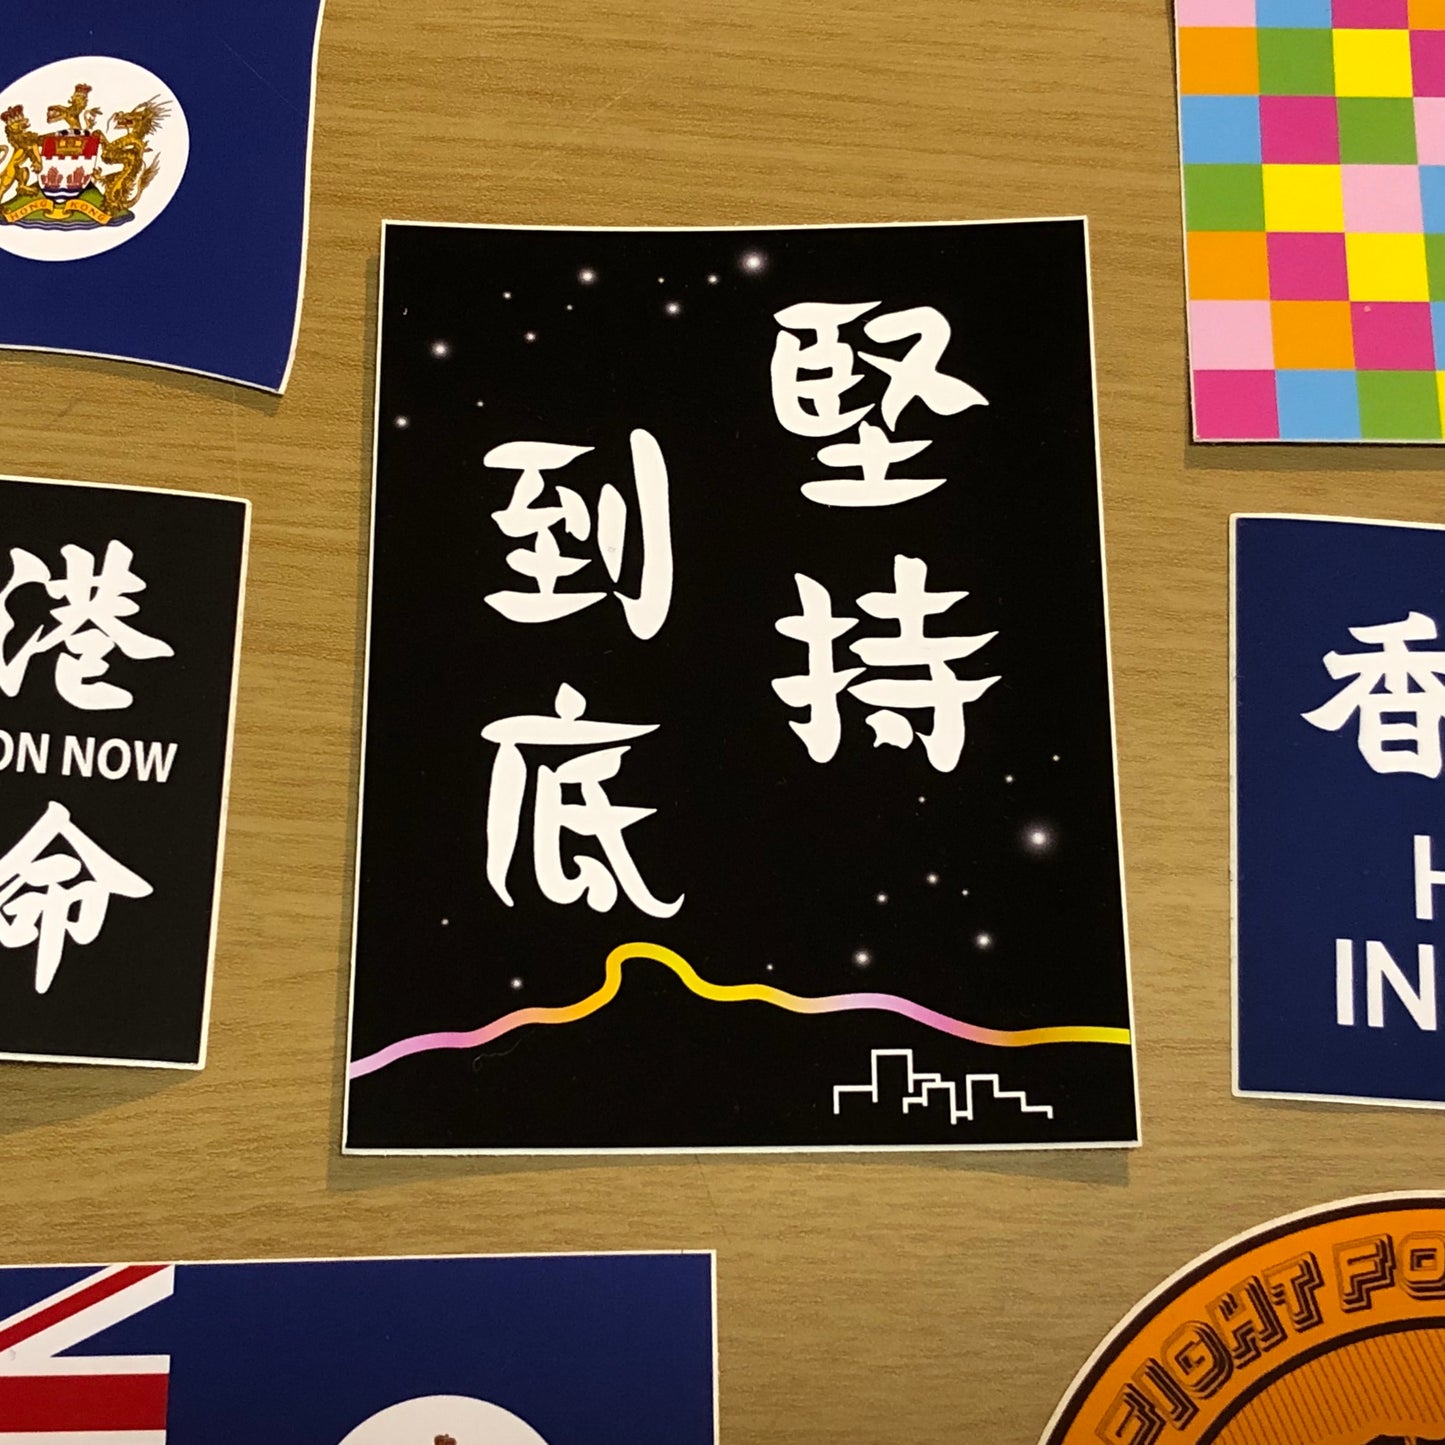 10cm 貼紙系列 🇬🇧🇹🇼 Made in Britain / Taiwan